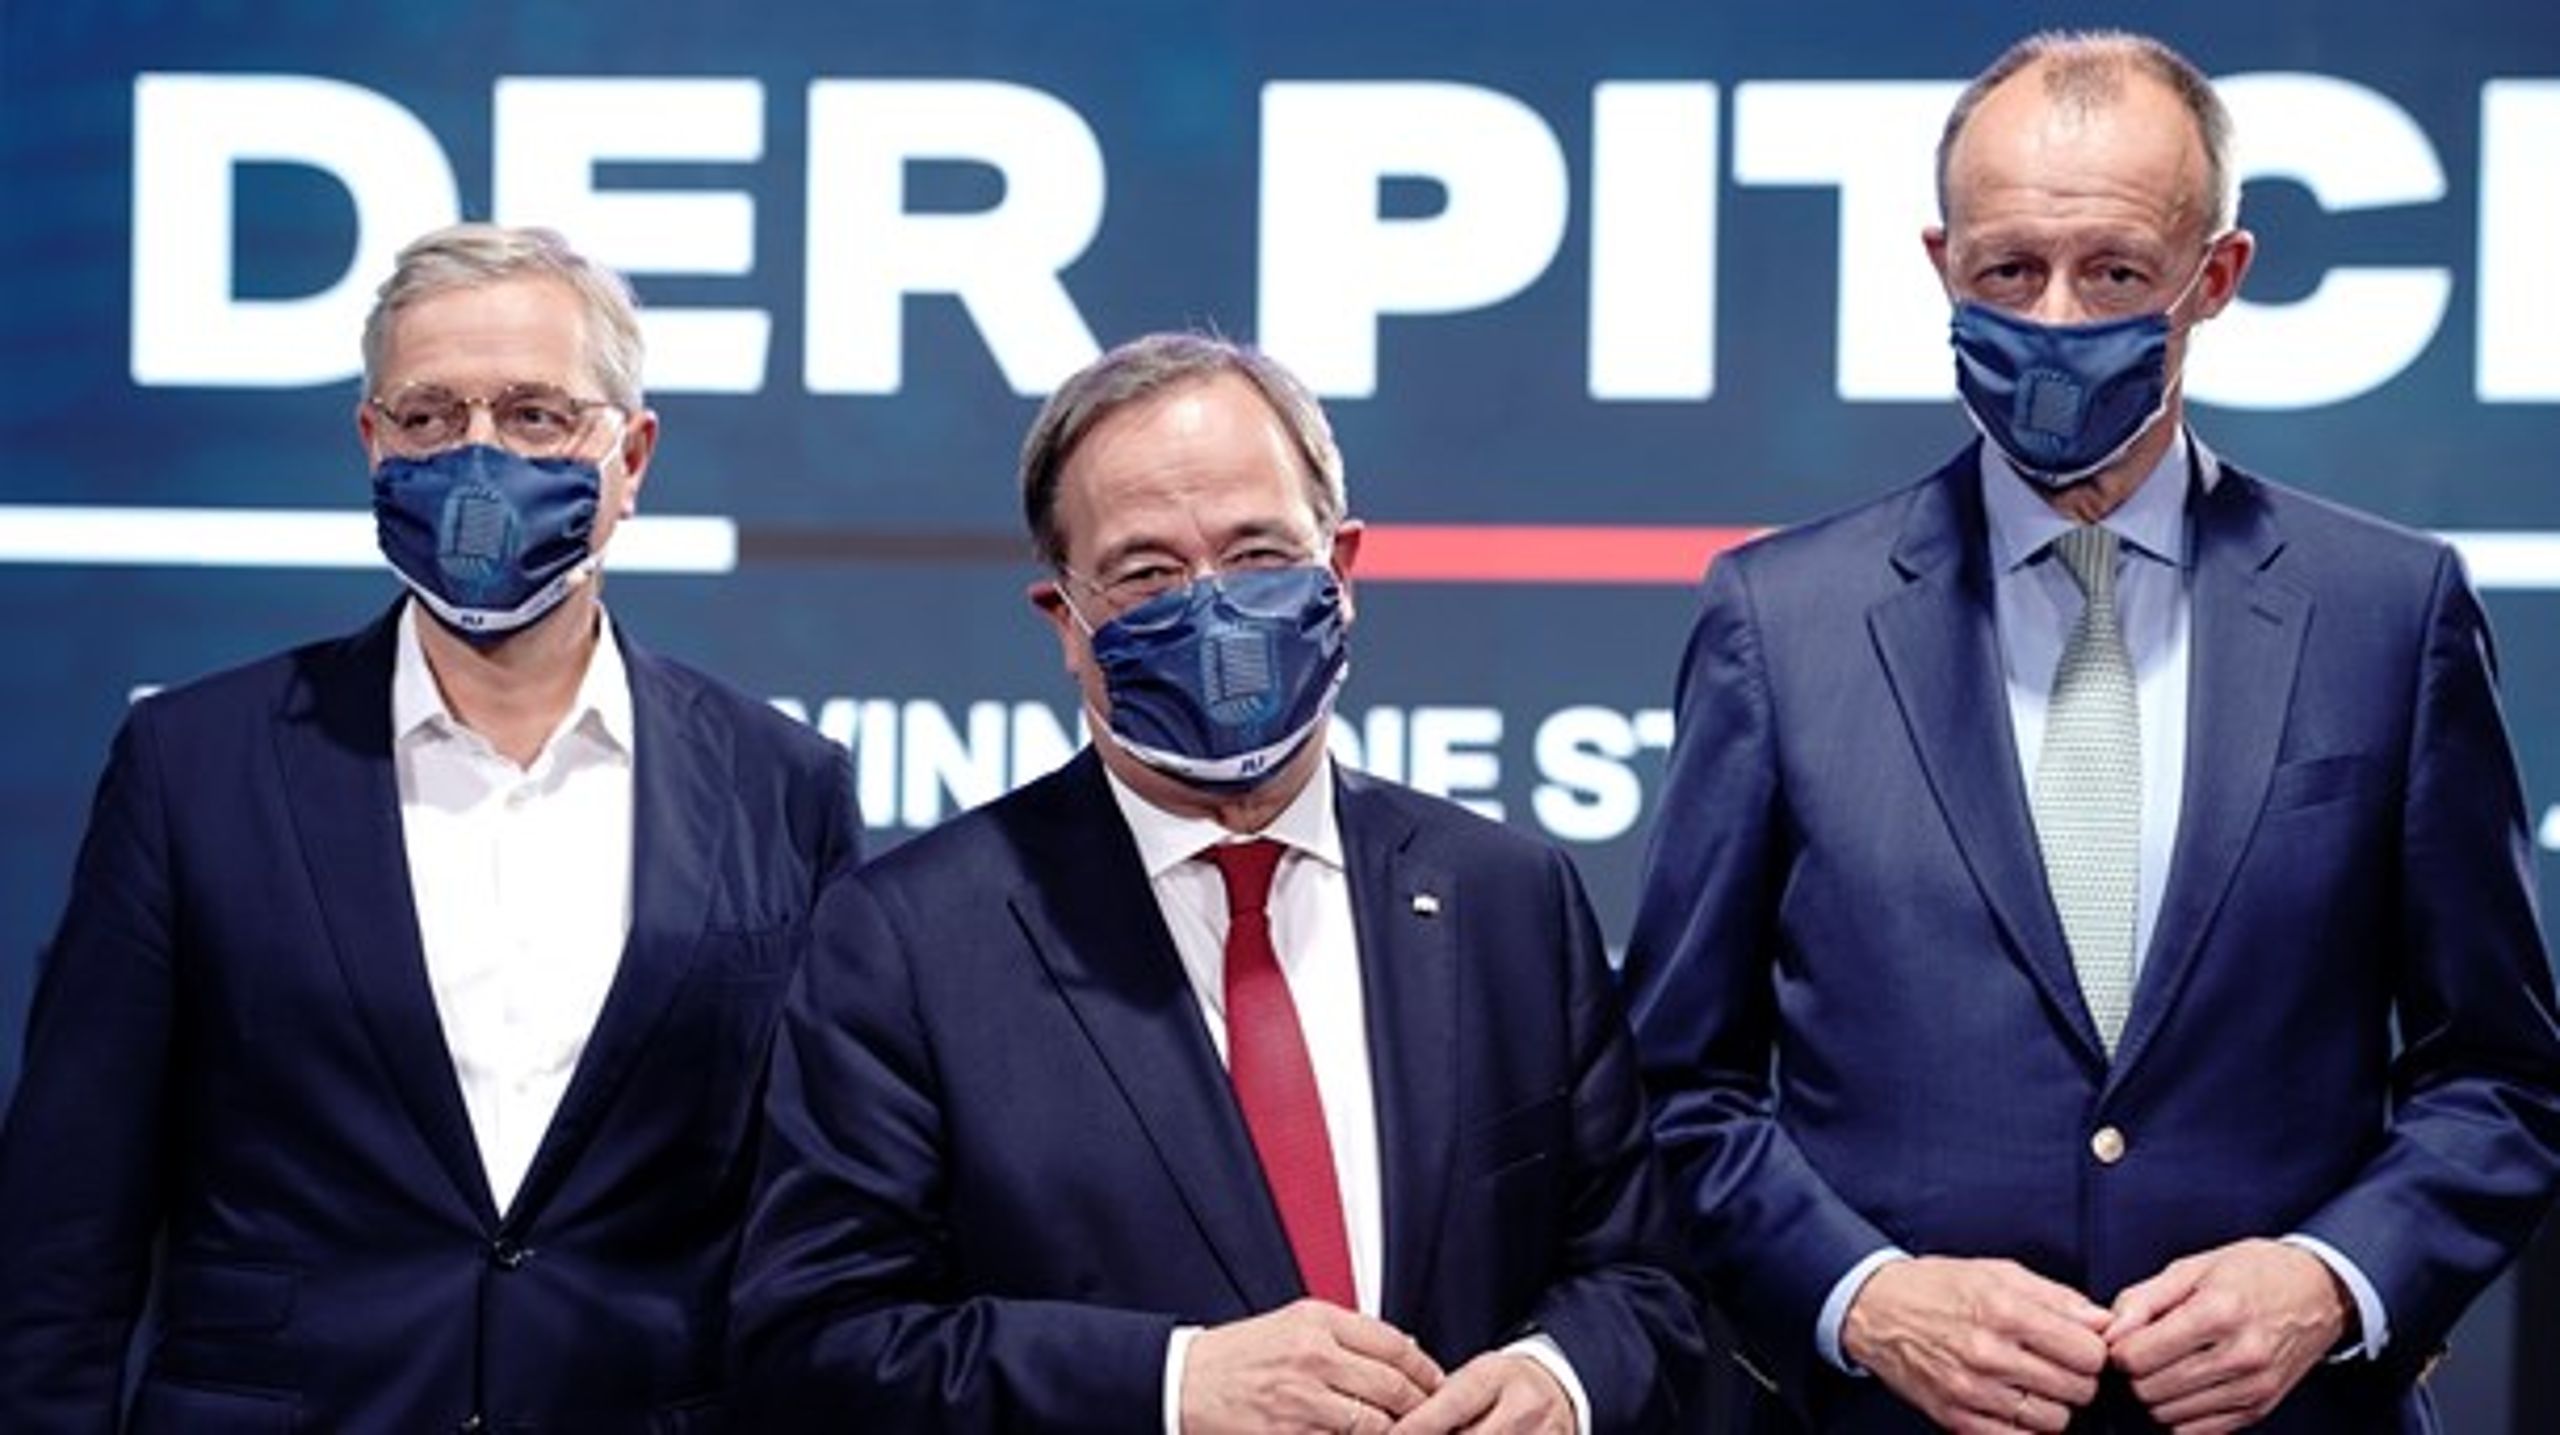 Norbert Röttgen, Armin Laschet och Friedrich Merz vill alla bli nya partiledare för CDU.